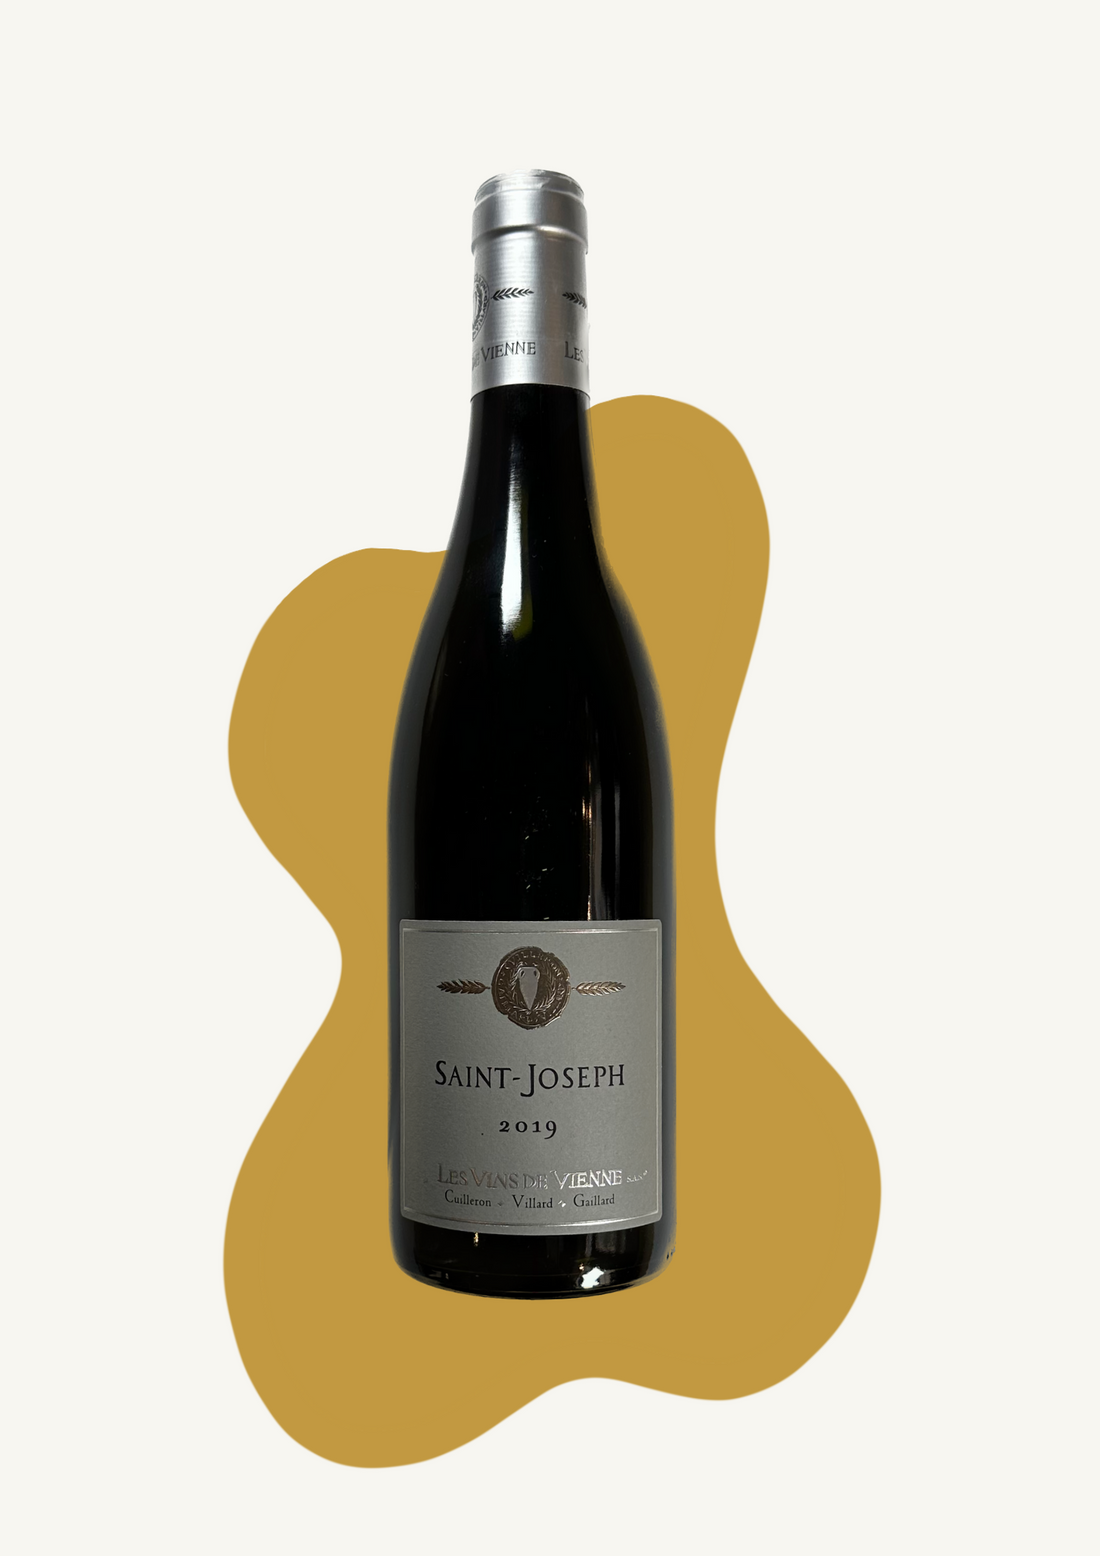 Saint-Joseph - Les vins de Vienne - 2019